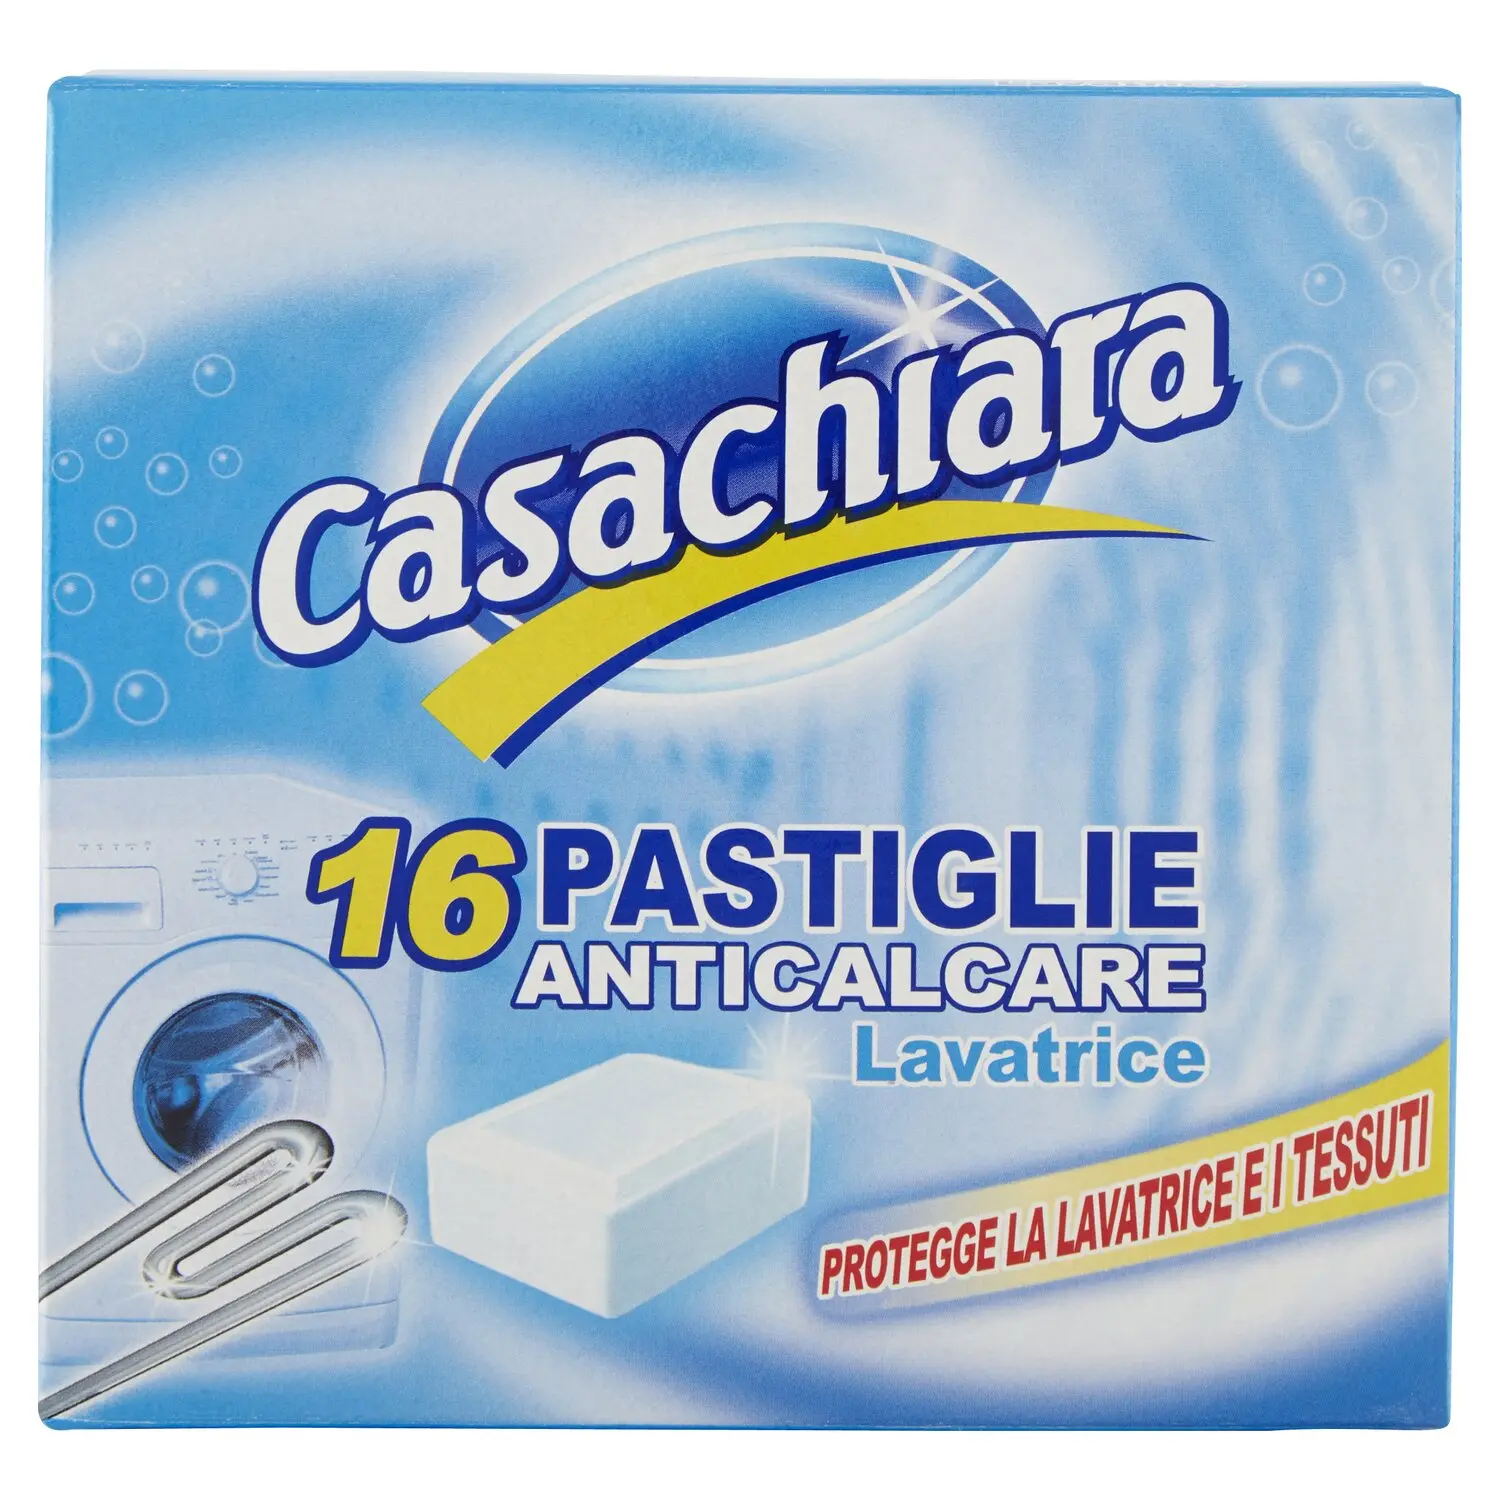 Casachiara Pastiglie Anticalcare Lavatrice 16 x 15 g